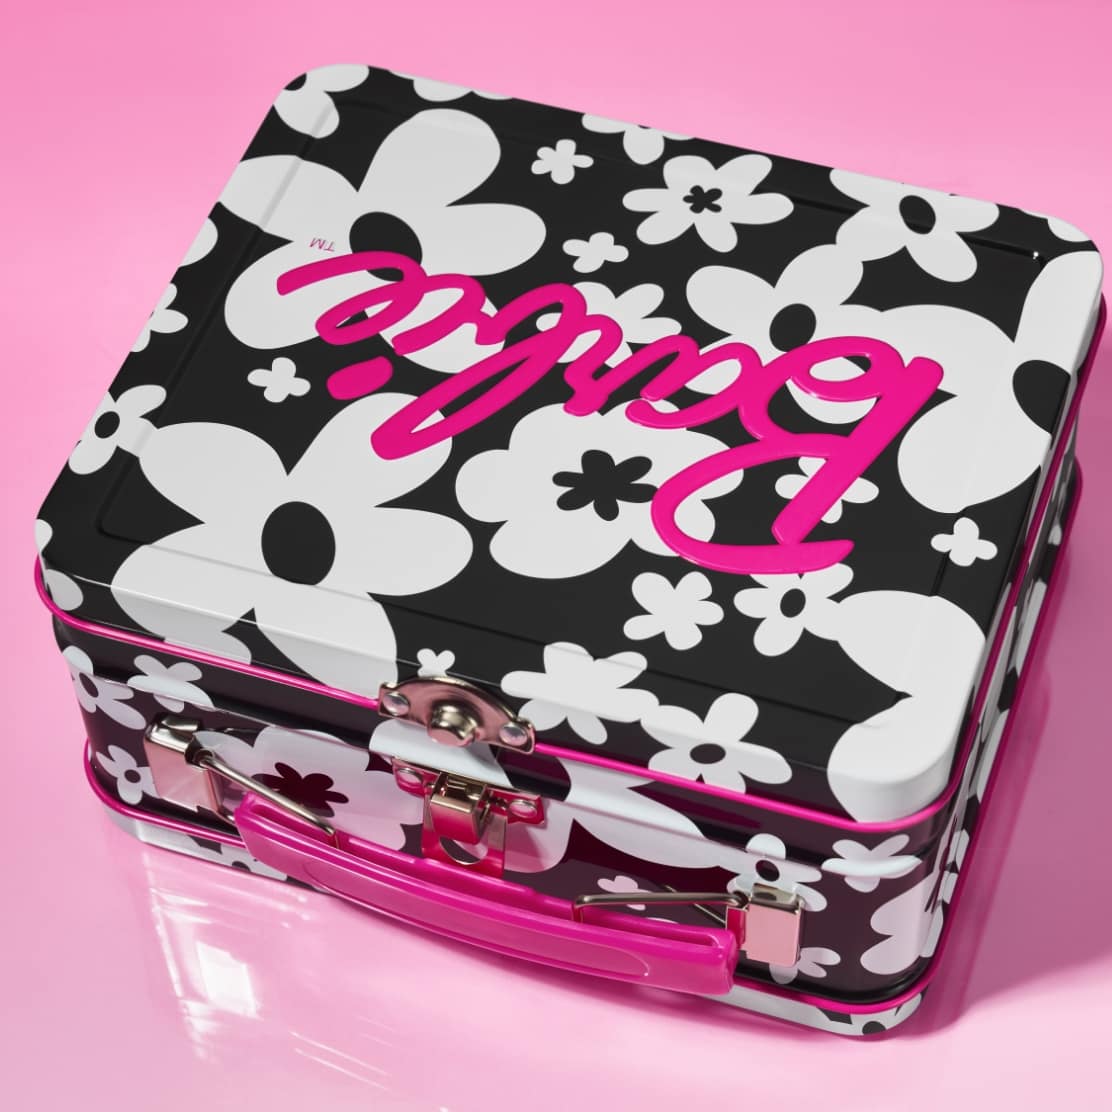 Erstes Bild. Eine Barbie-Dose im Lunchbox-Stil mit grafischem, schwarz-weißem Blumenprint und pinken Akzenten.